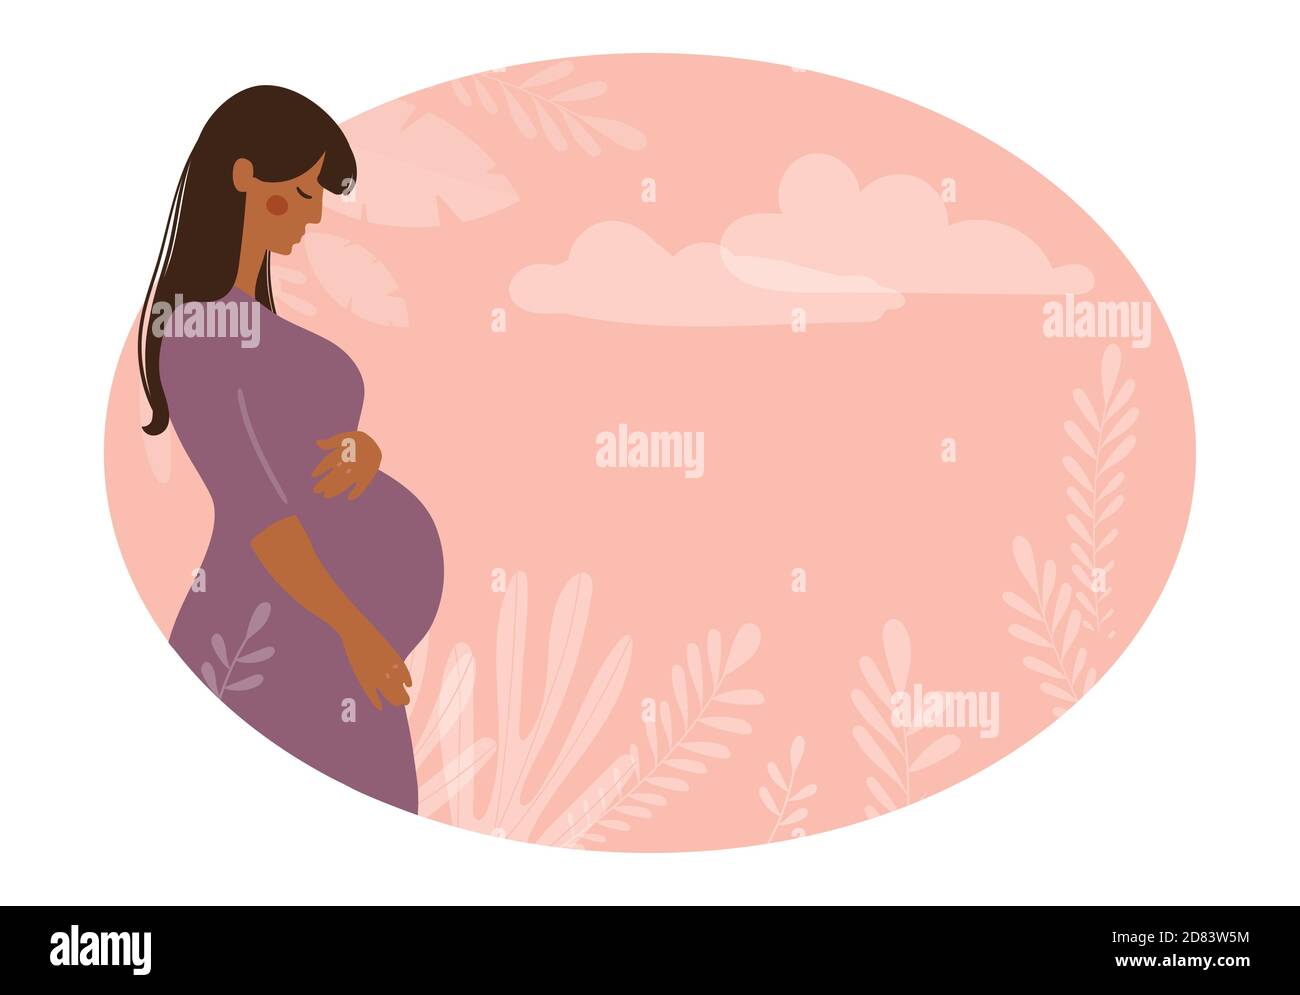 Bannière moderne sur la grossesse et la maternité. Affiche avec une belle jeune femme enceinte avec de longs cheveux et un endroit pour le texte. Design minimaliste, illustration vectorielle plate Illustration de Vecteur